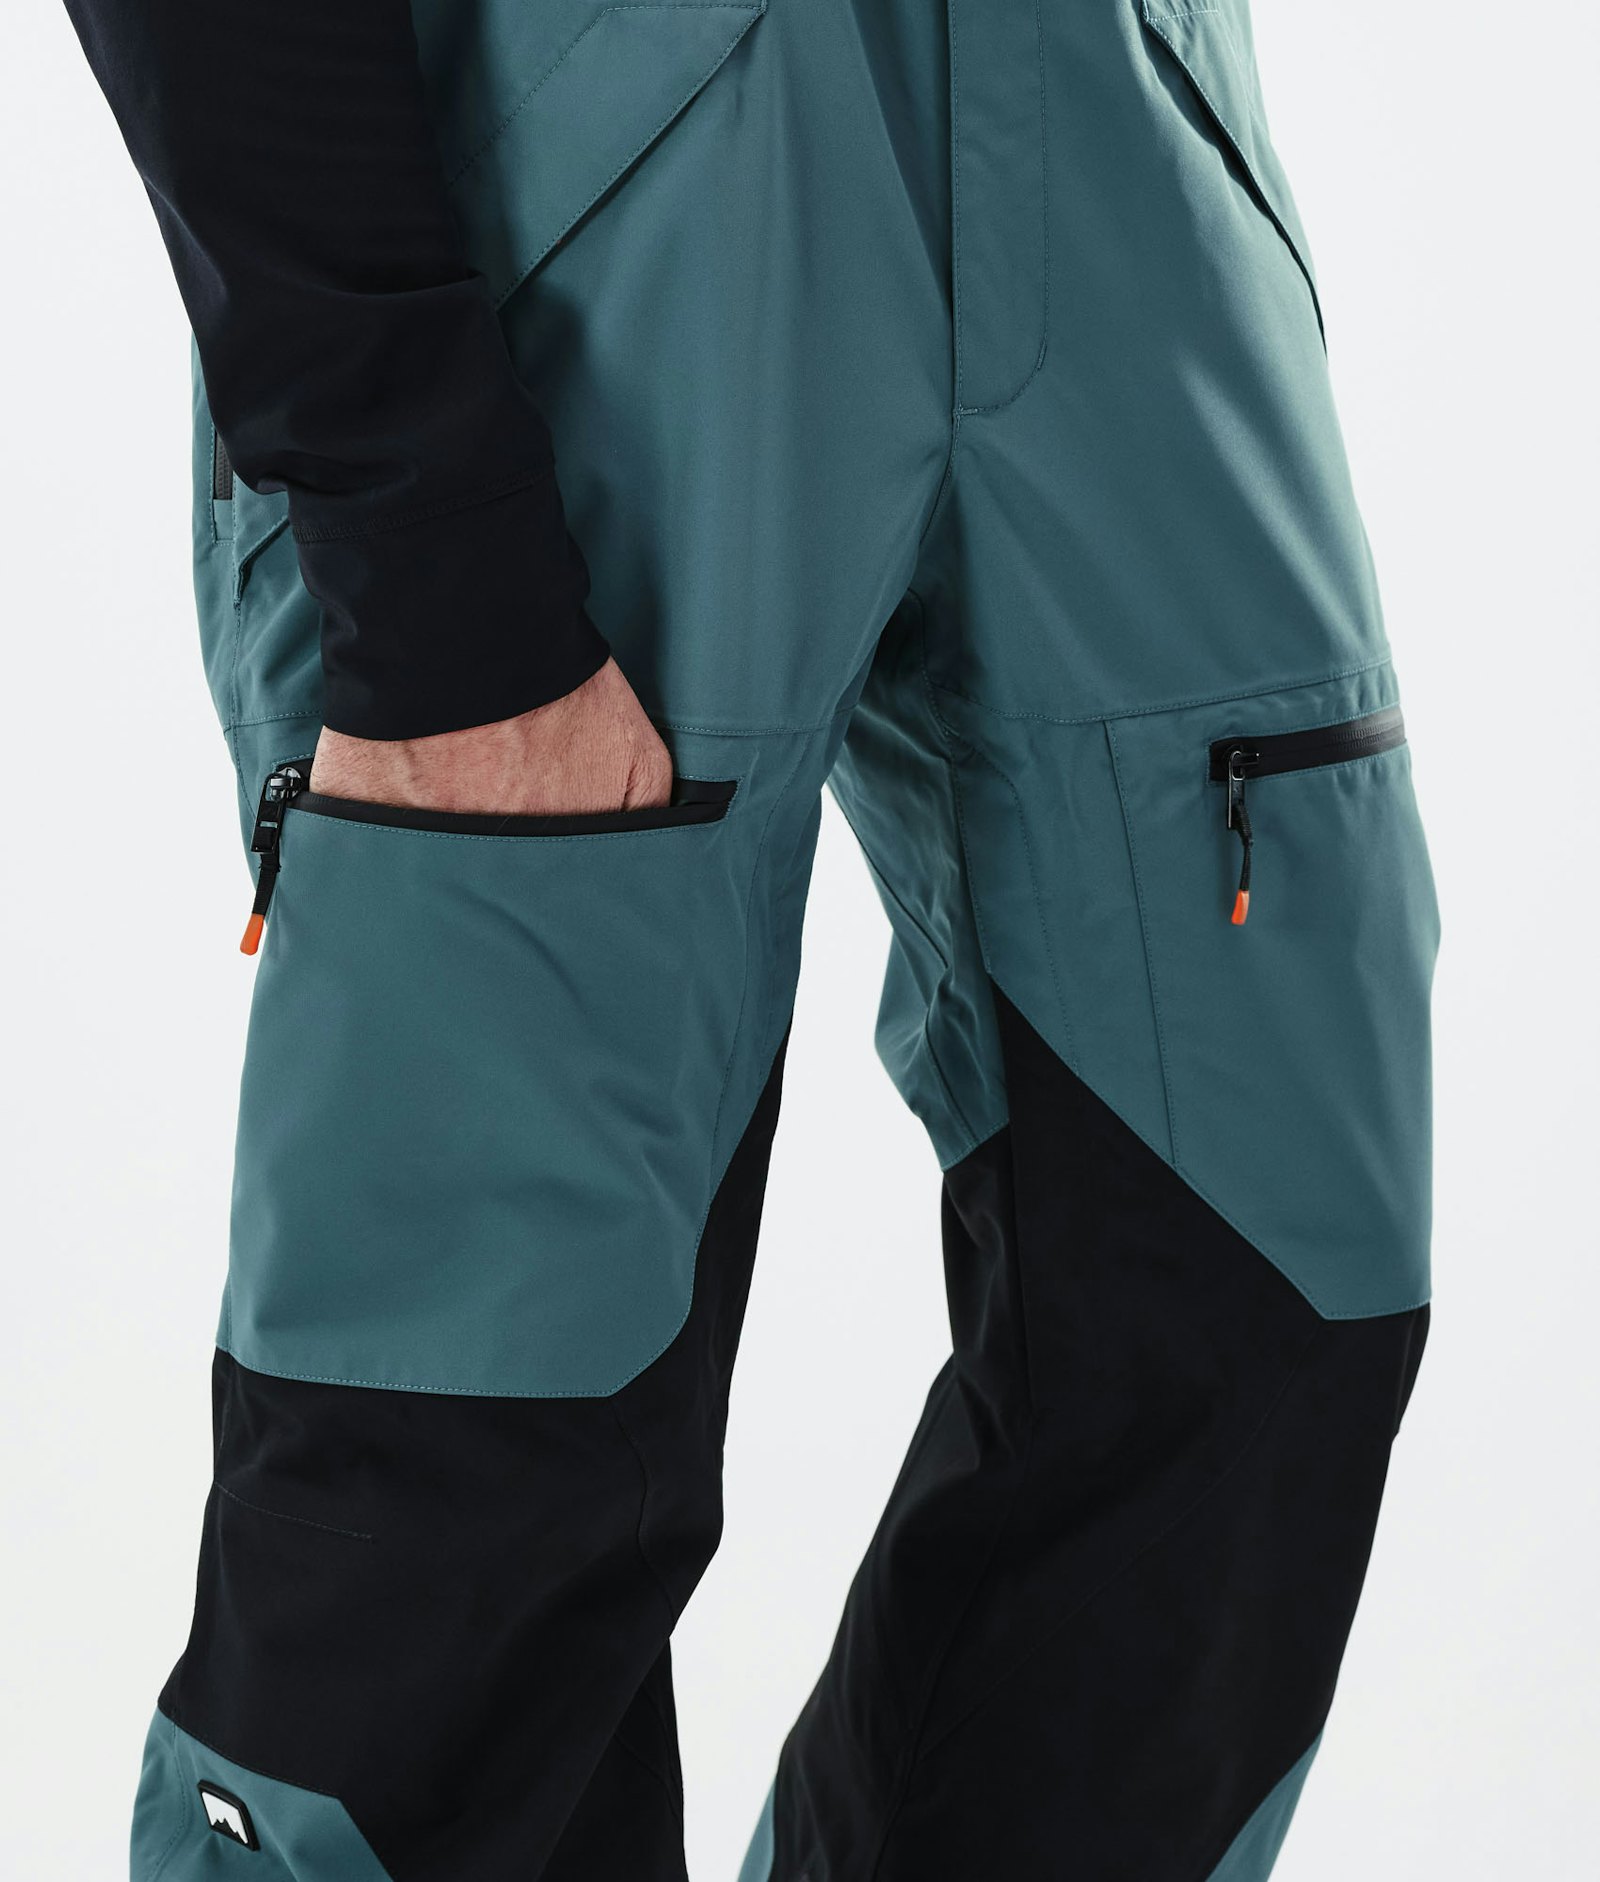 Moss 2021 Spodnie Snowboardowe Mężczyźni Atlantic/Black